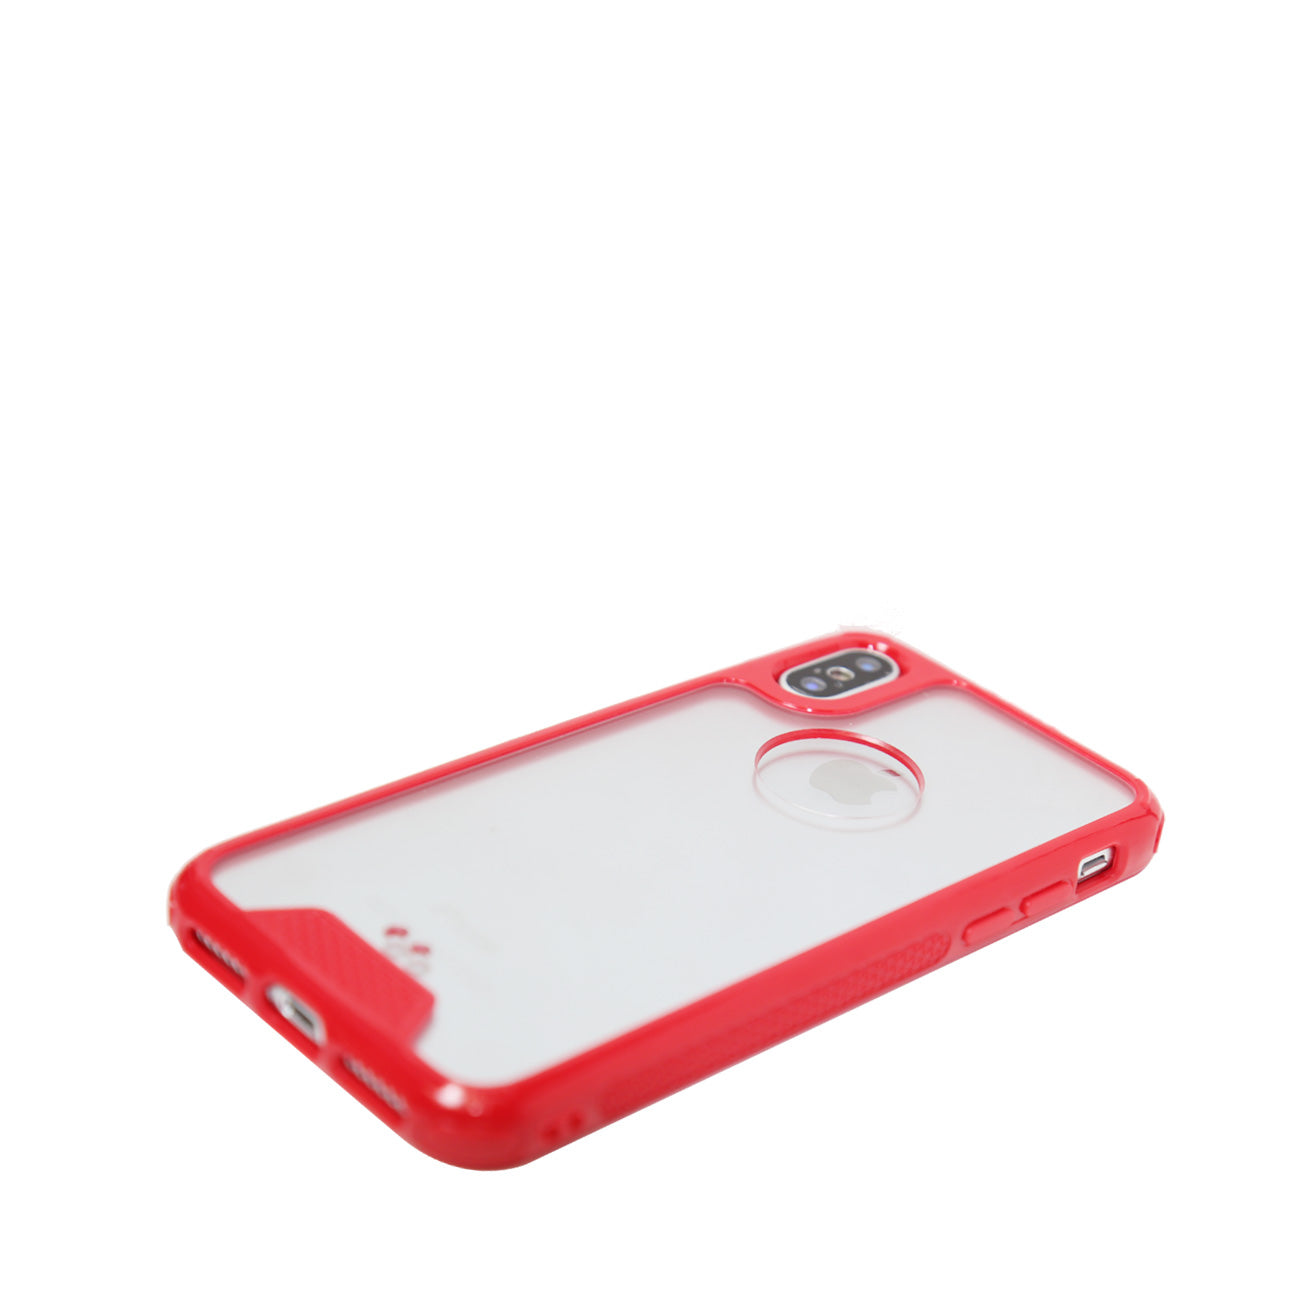 iPhone X Slim Bumper TPU Back Cover In Clear Red